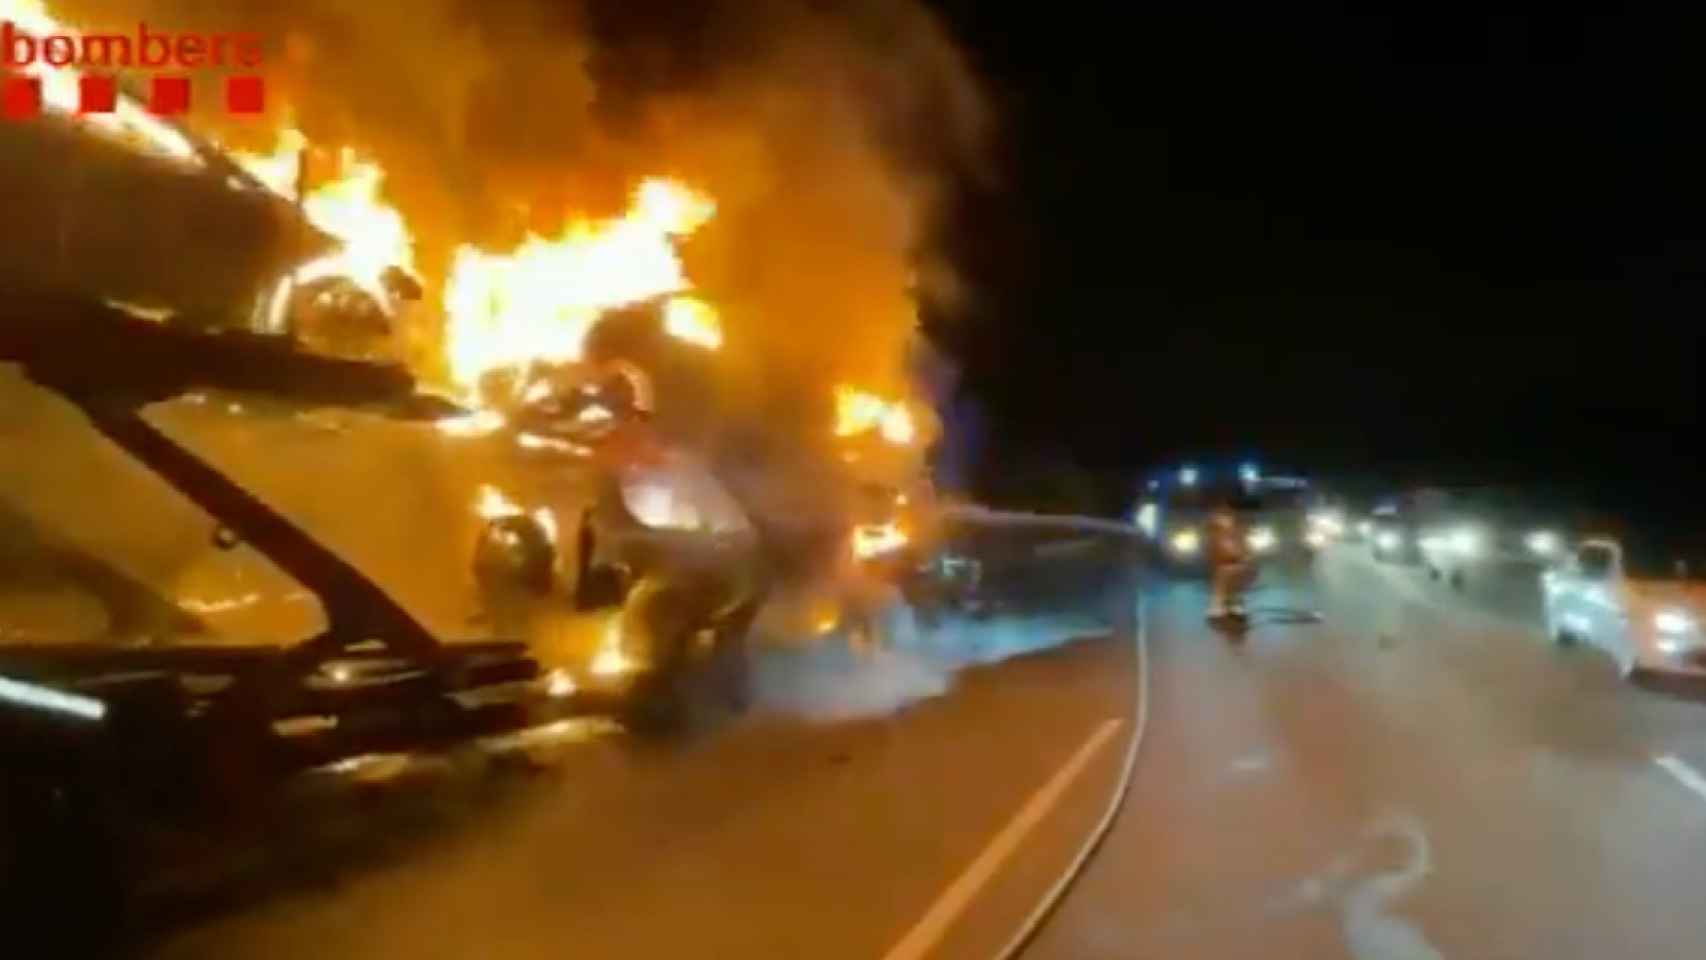 Incendio de un camión cargado de coches en la AP-7 / BOMBERS